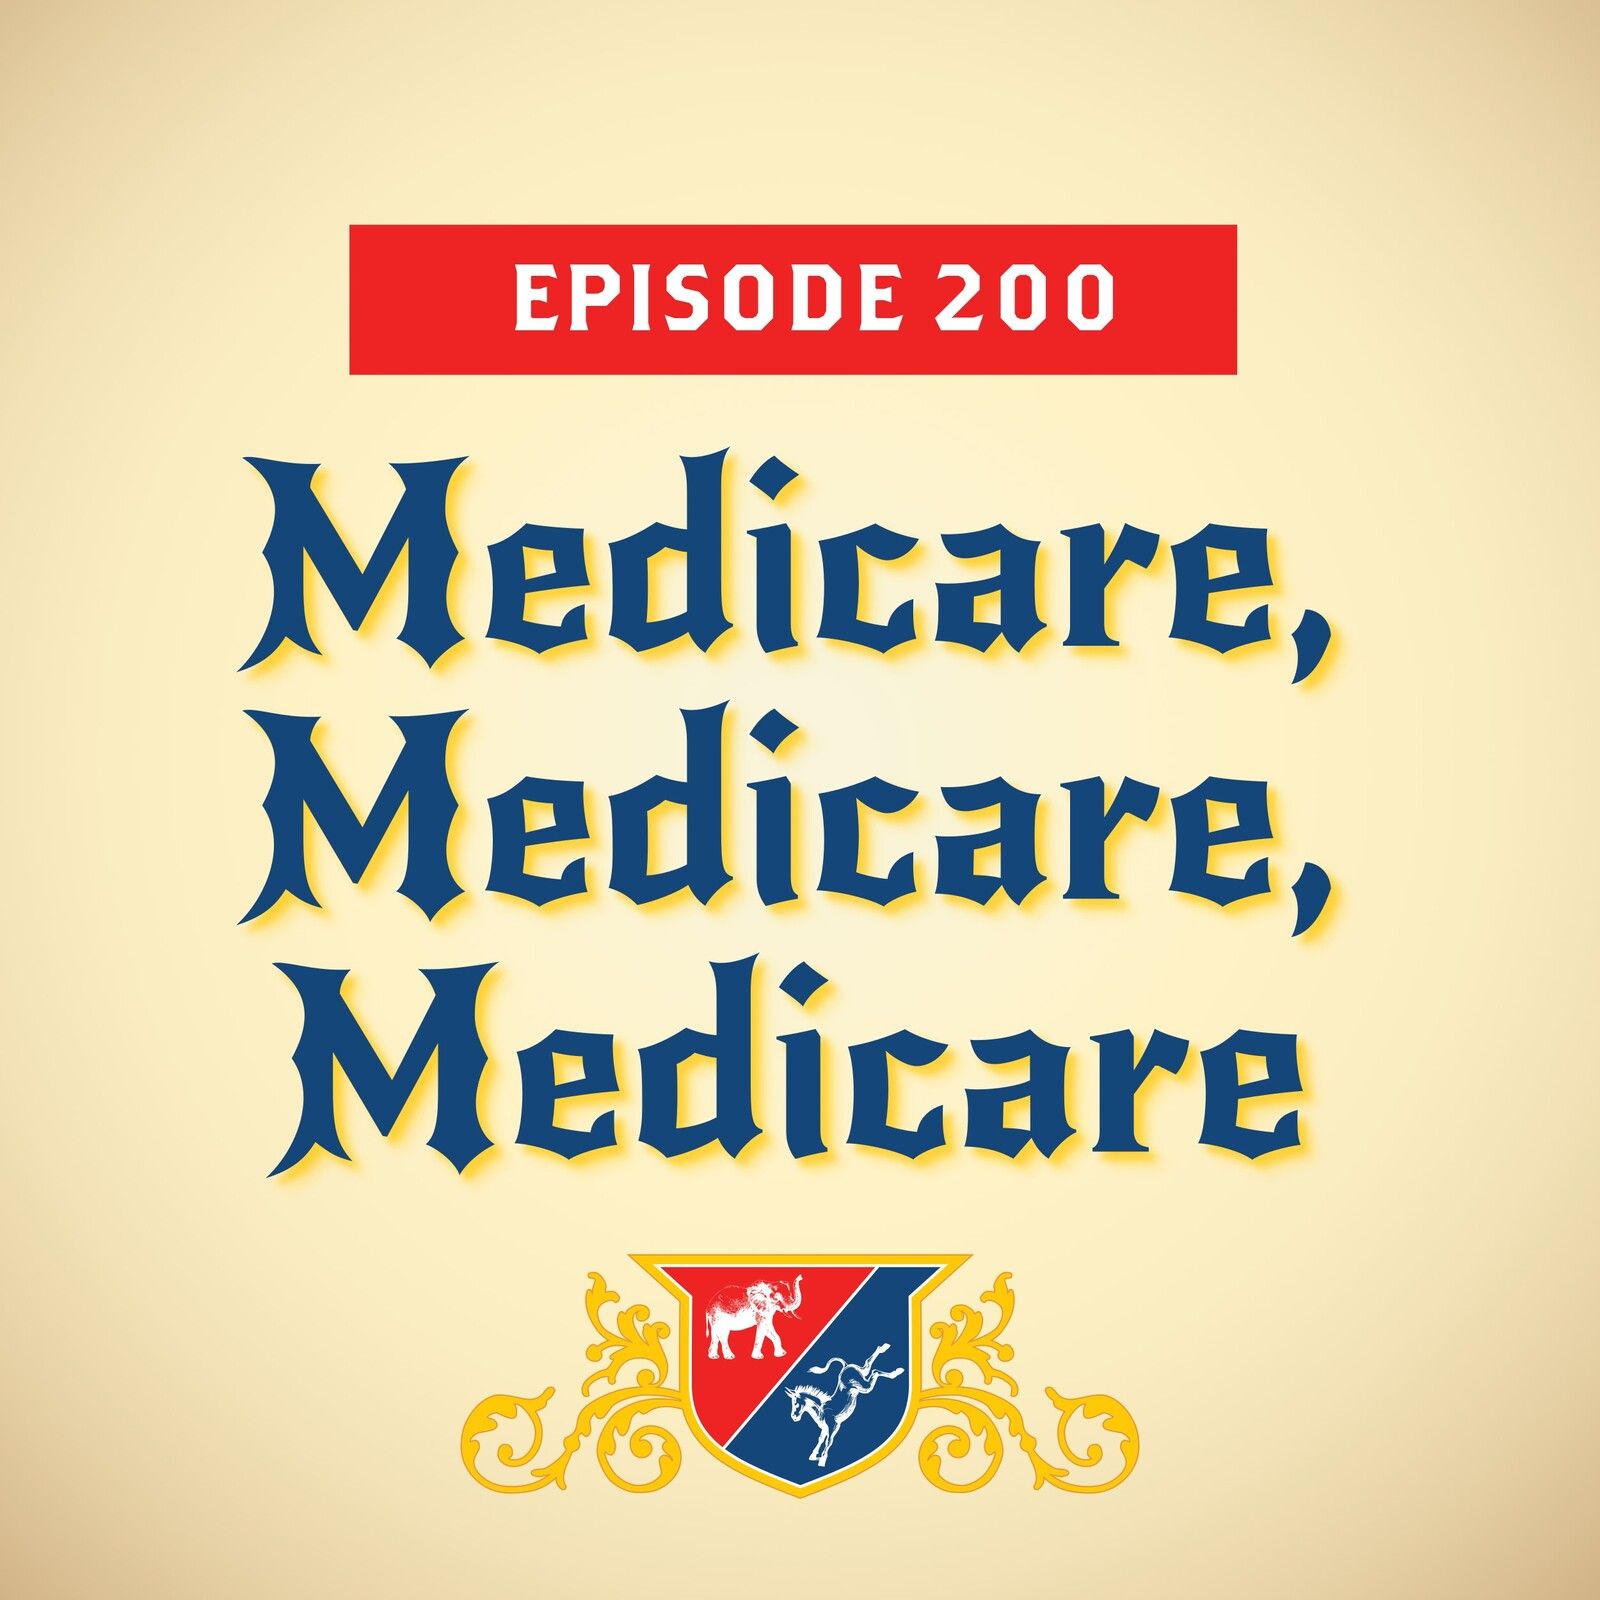 Medicare, Medicare, Medicare (with Steve Israel)